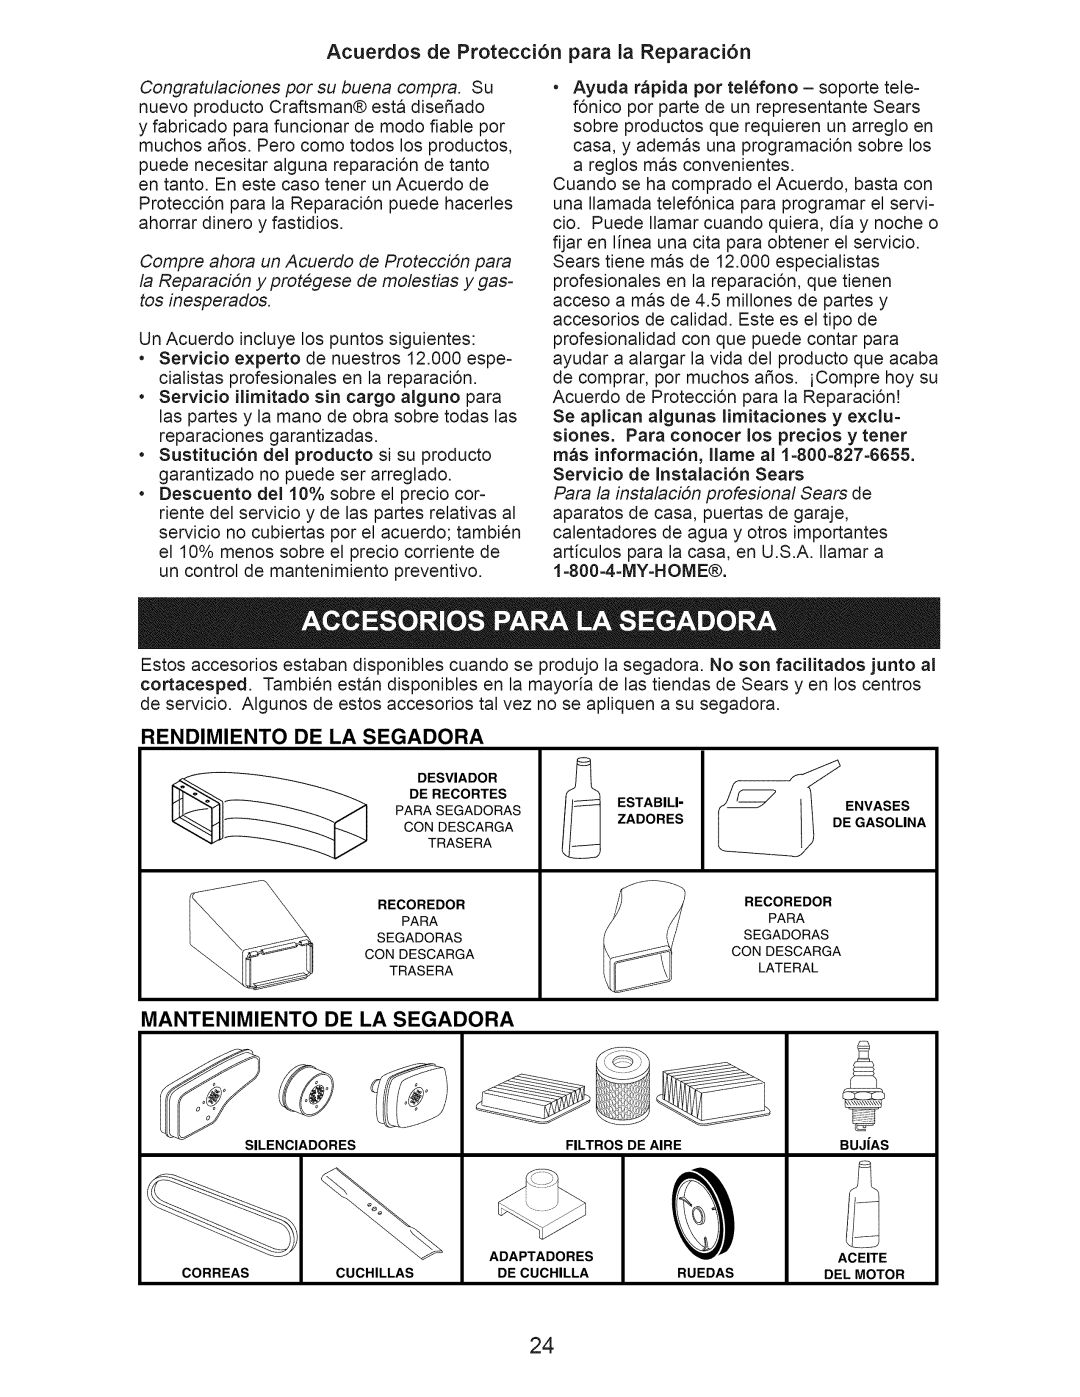 Craftsman 917.374062 Acuerdos de Protecci6n para la Reparaci6n, Rendimiento De La Segadora, Mantenimiento De La Segadora 